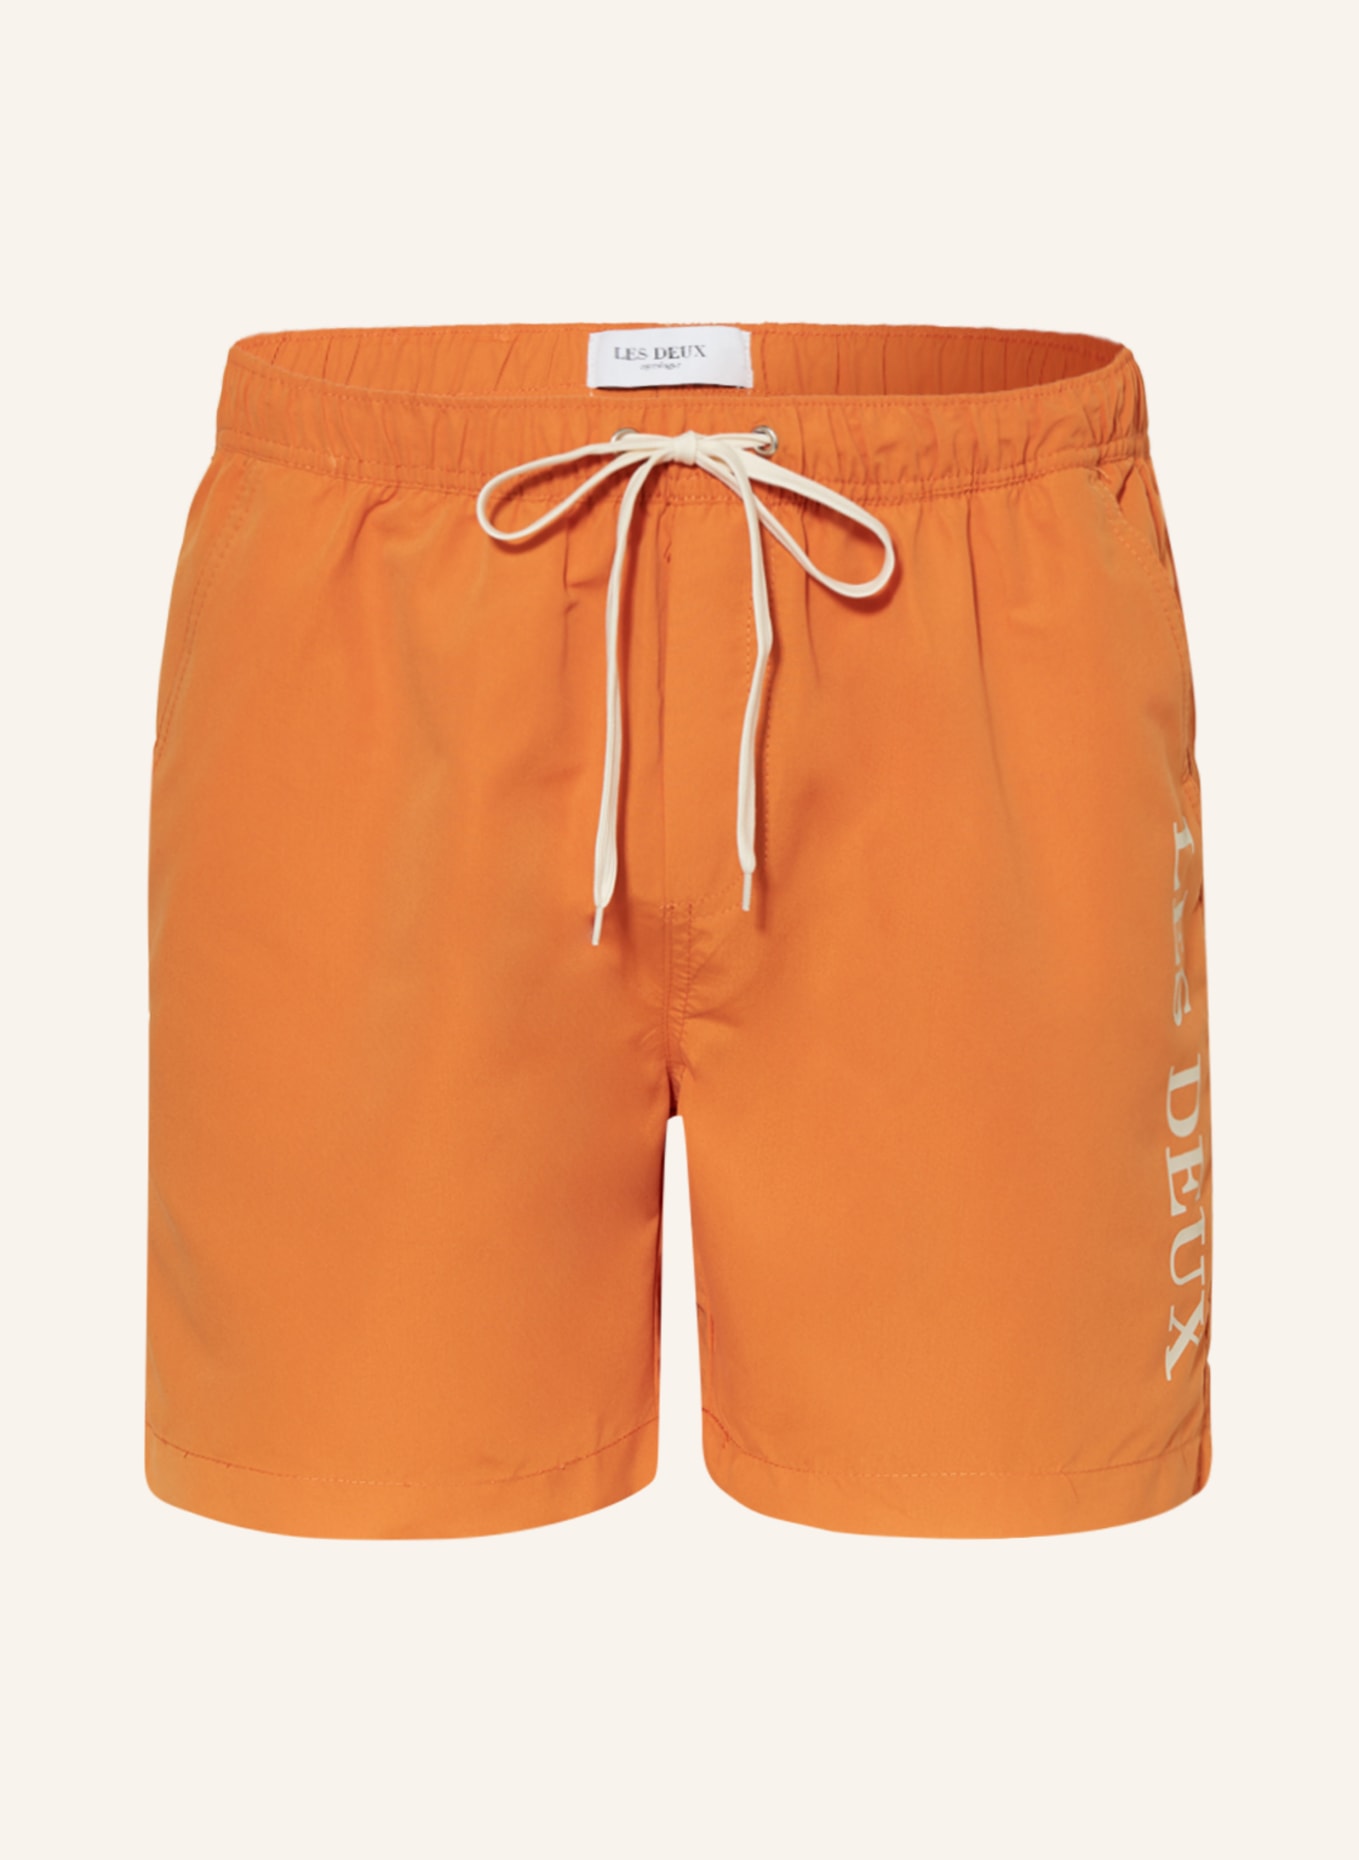 LES DEUX Swim shorts, Color: ORANGE (Image 1)